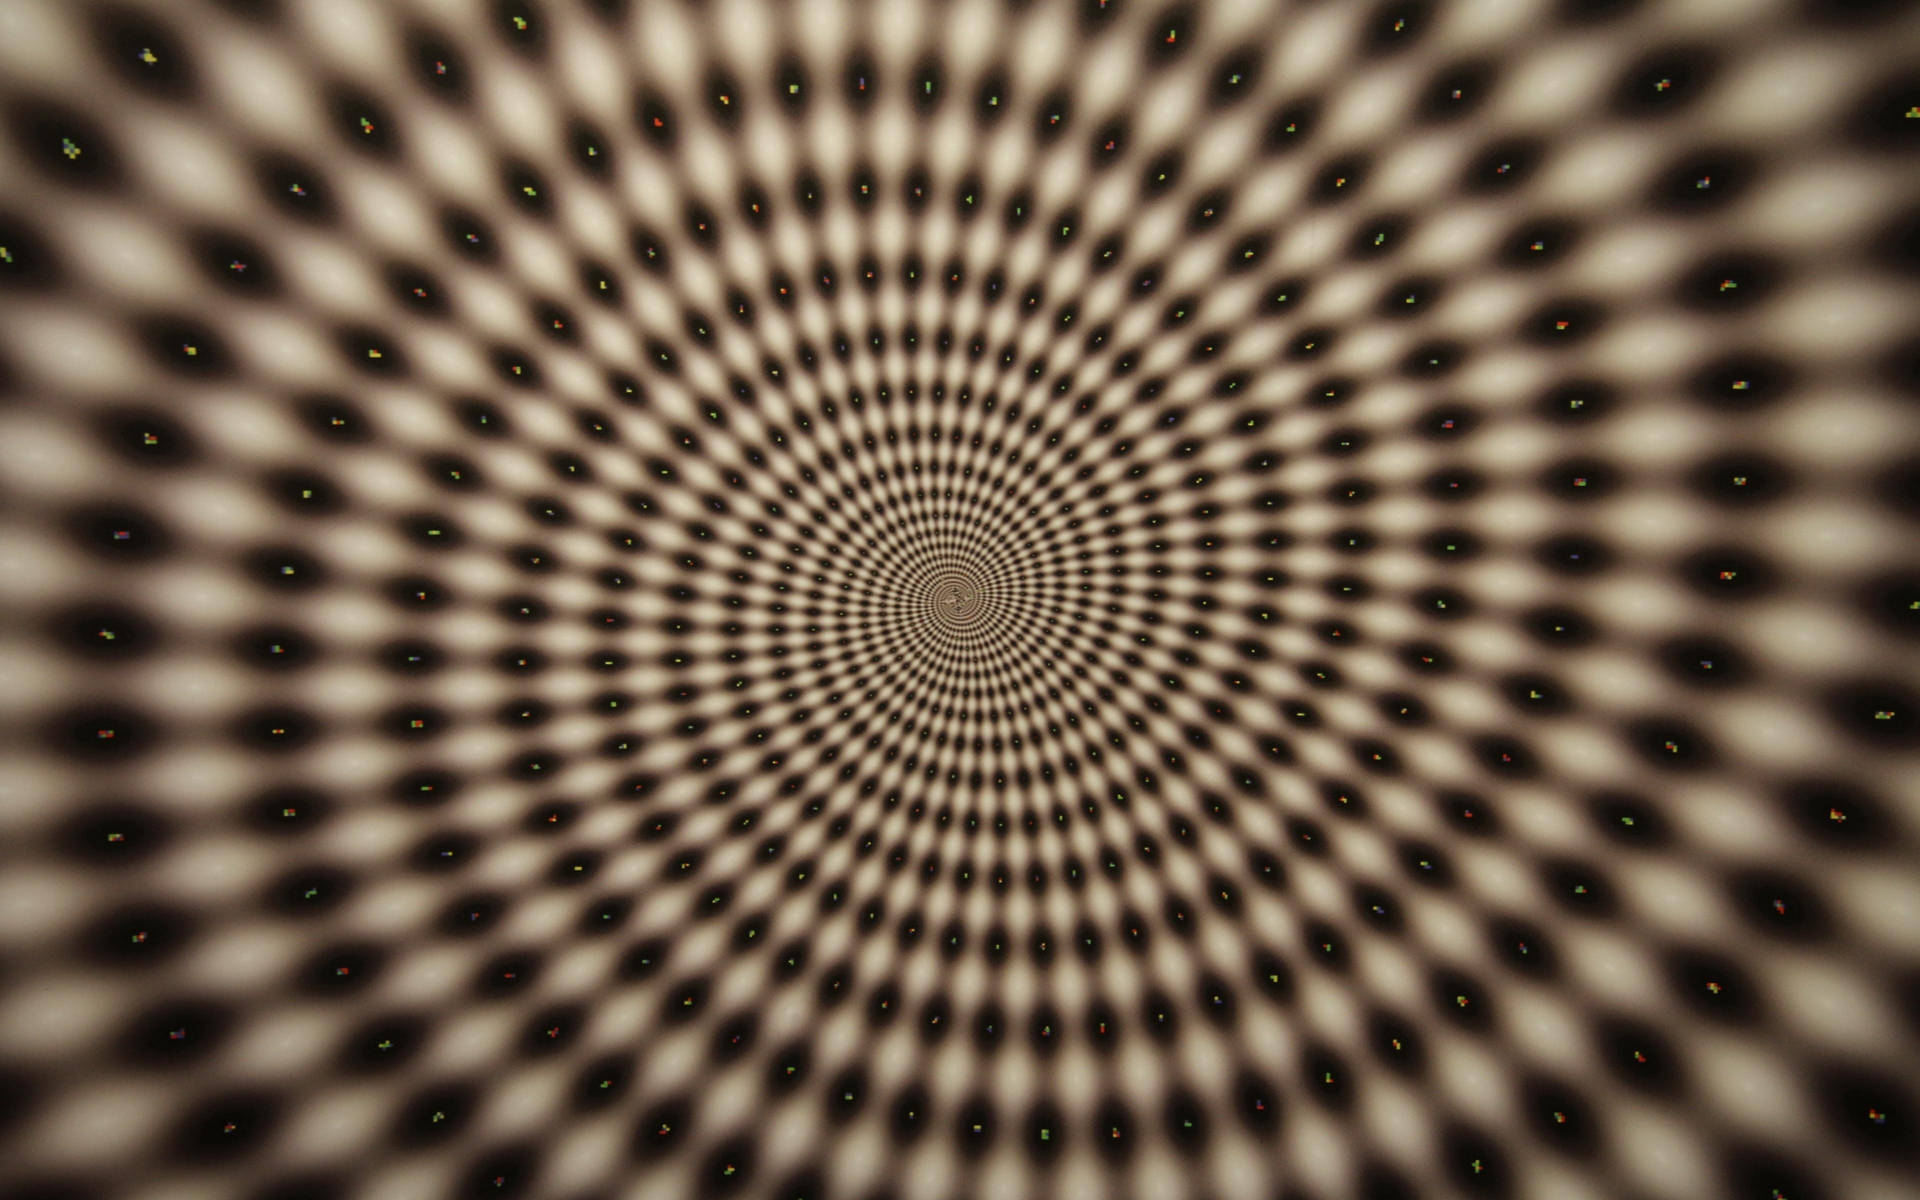 Harlequin Spiral Illusion Art Background